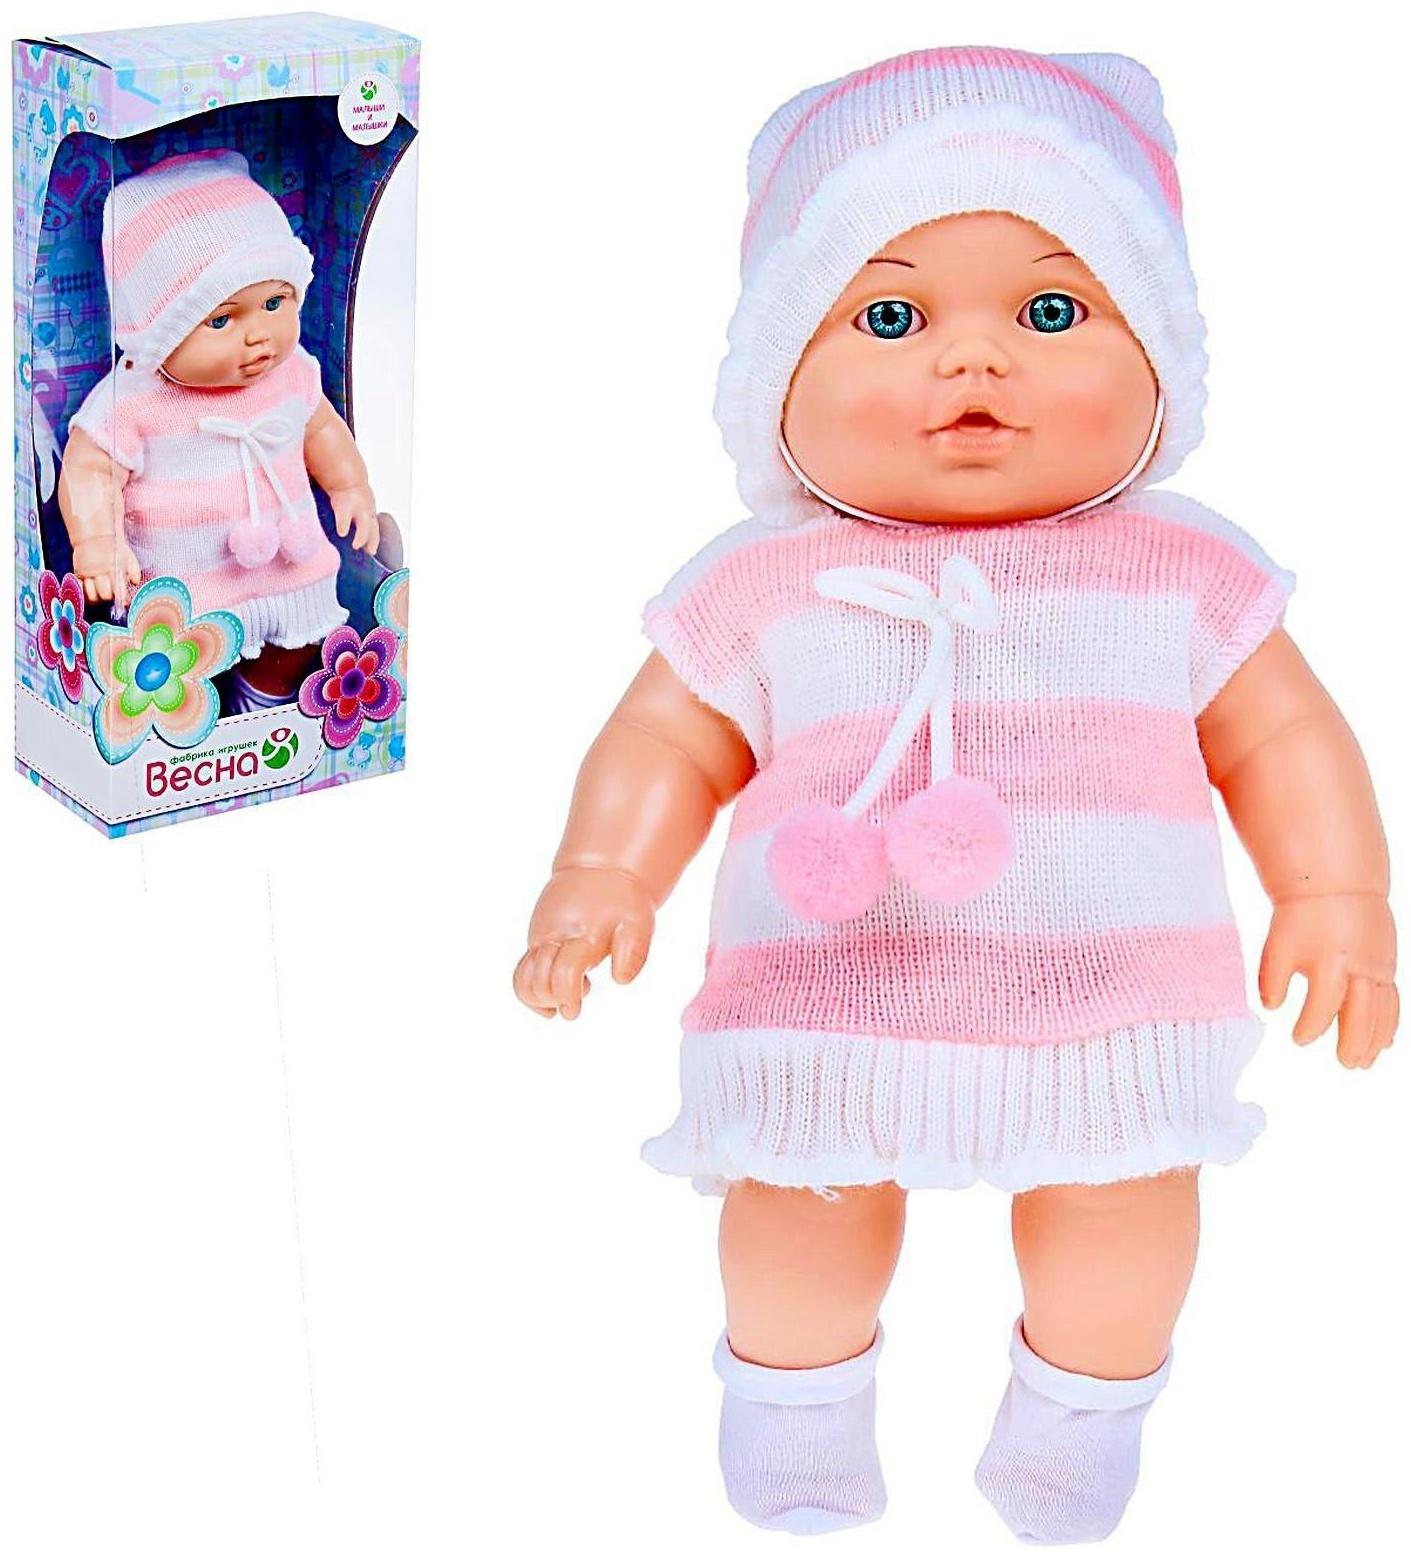 Кукла «Малышка 12», 30 см